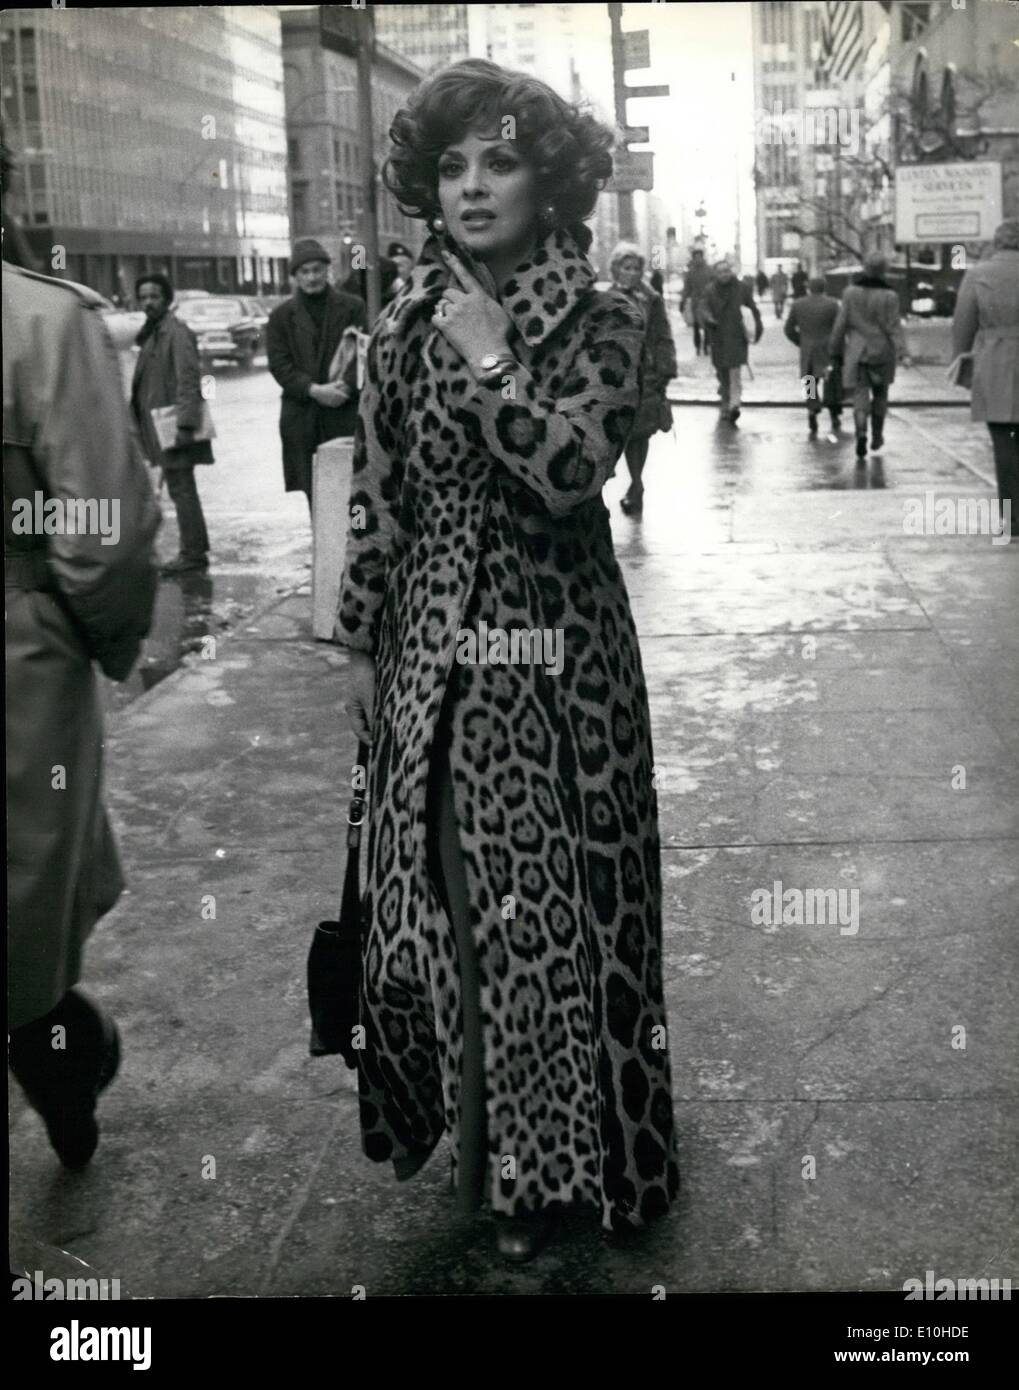 Febbraio 02, 1973 - New York City Gina Lollobrigida, qui per privati assegnazione fotografico ( che fa un buon affare di questo genere di cose professionalmente), fuori per una passeggiata. L'attrice è stata severamente criticato per la sua pelliccia- particolarmente questo moto vorticoso lunghezza alla caviglia leopard da esasperato gli amanti degli animali. Foto Stock